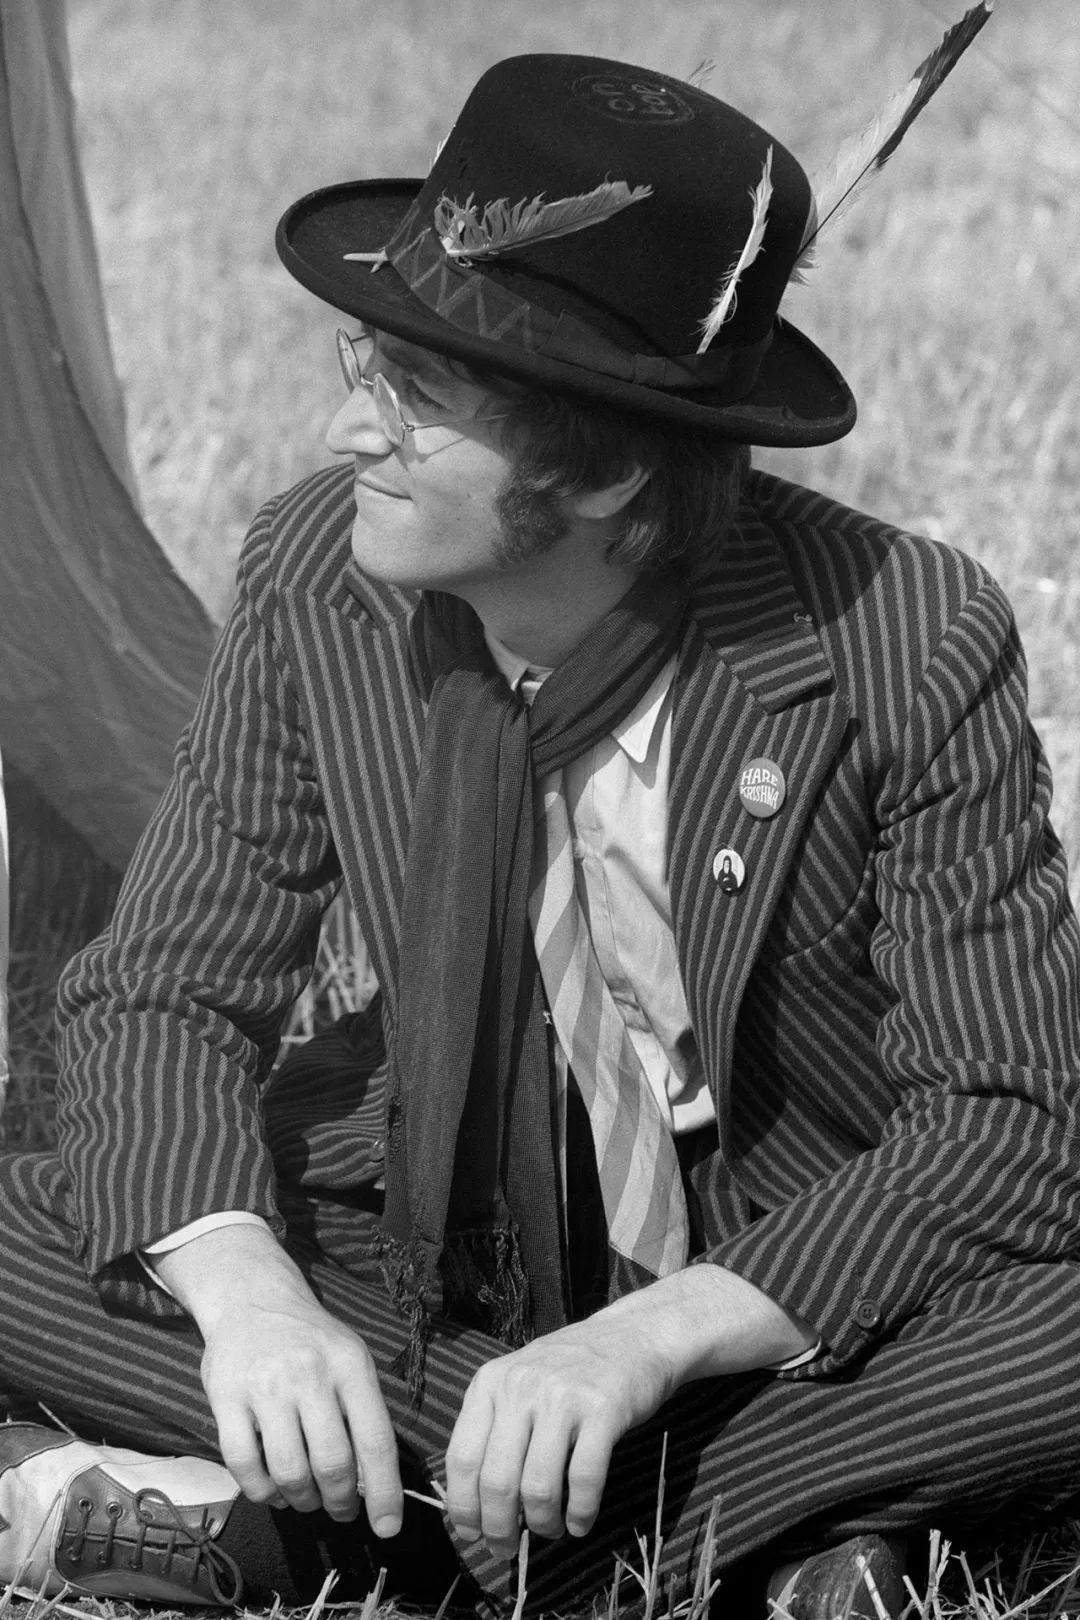 约翰列侬发型图片